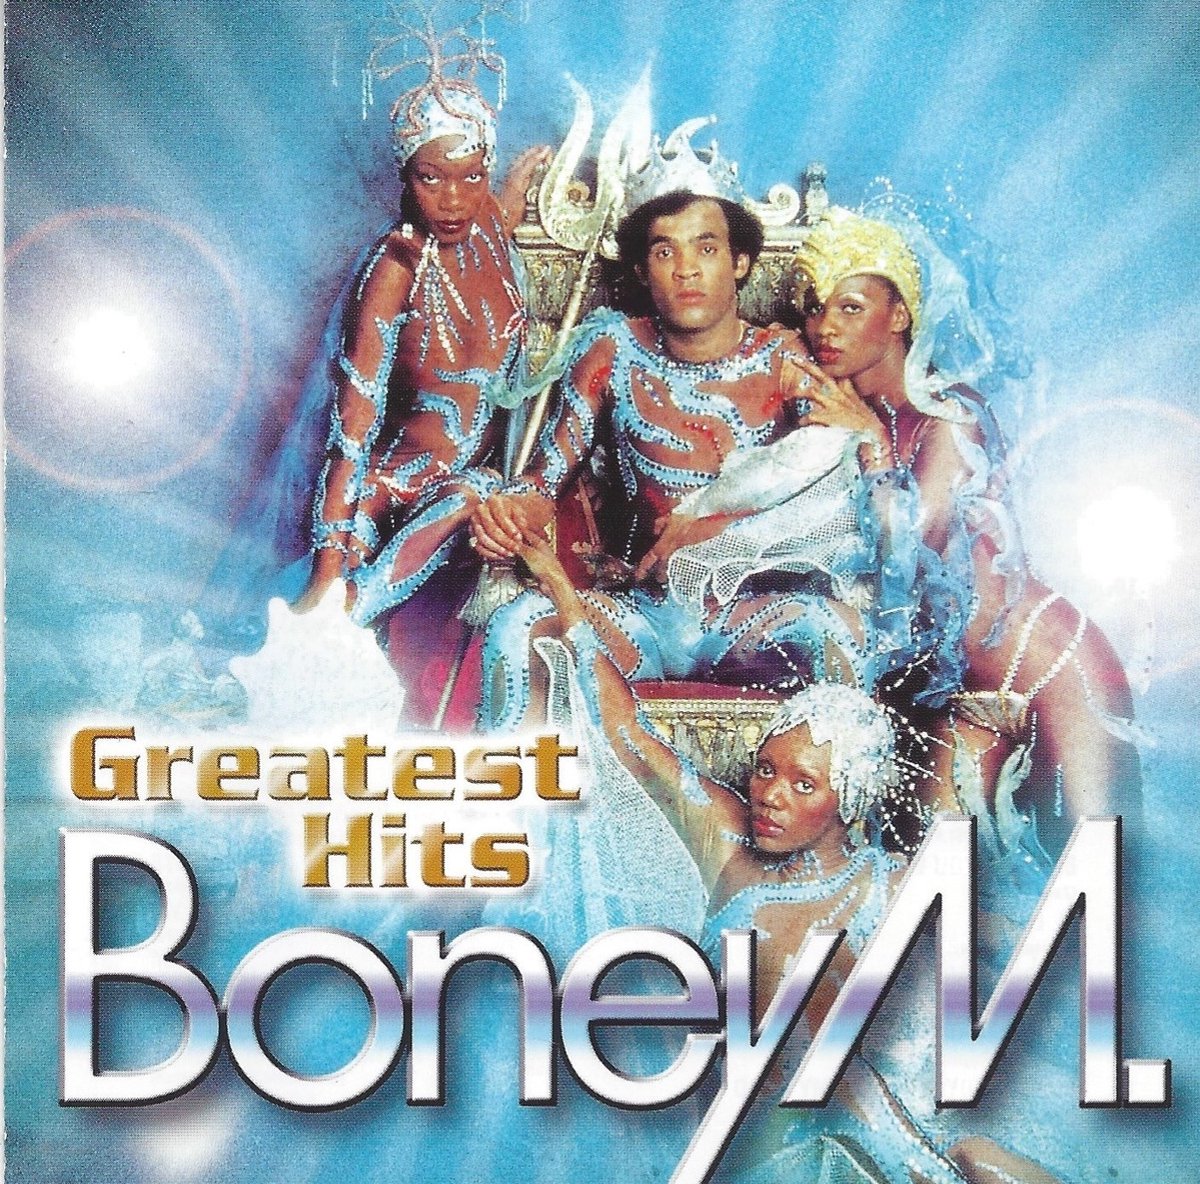 Boney m dance. Boney m обложка. Boney m обложки дисков. Бони м обложки дисков. Boney m cd1.